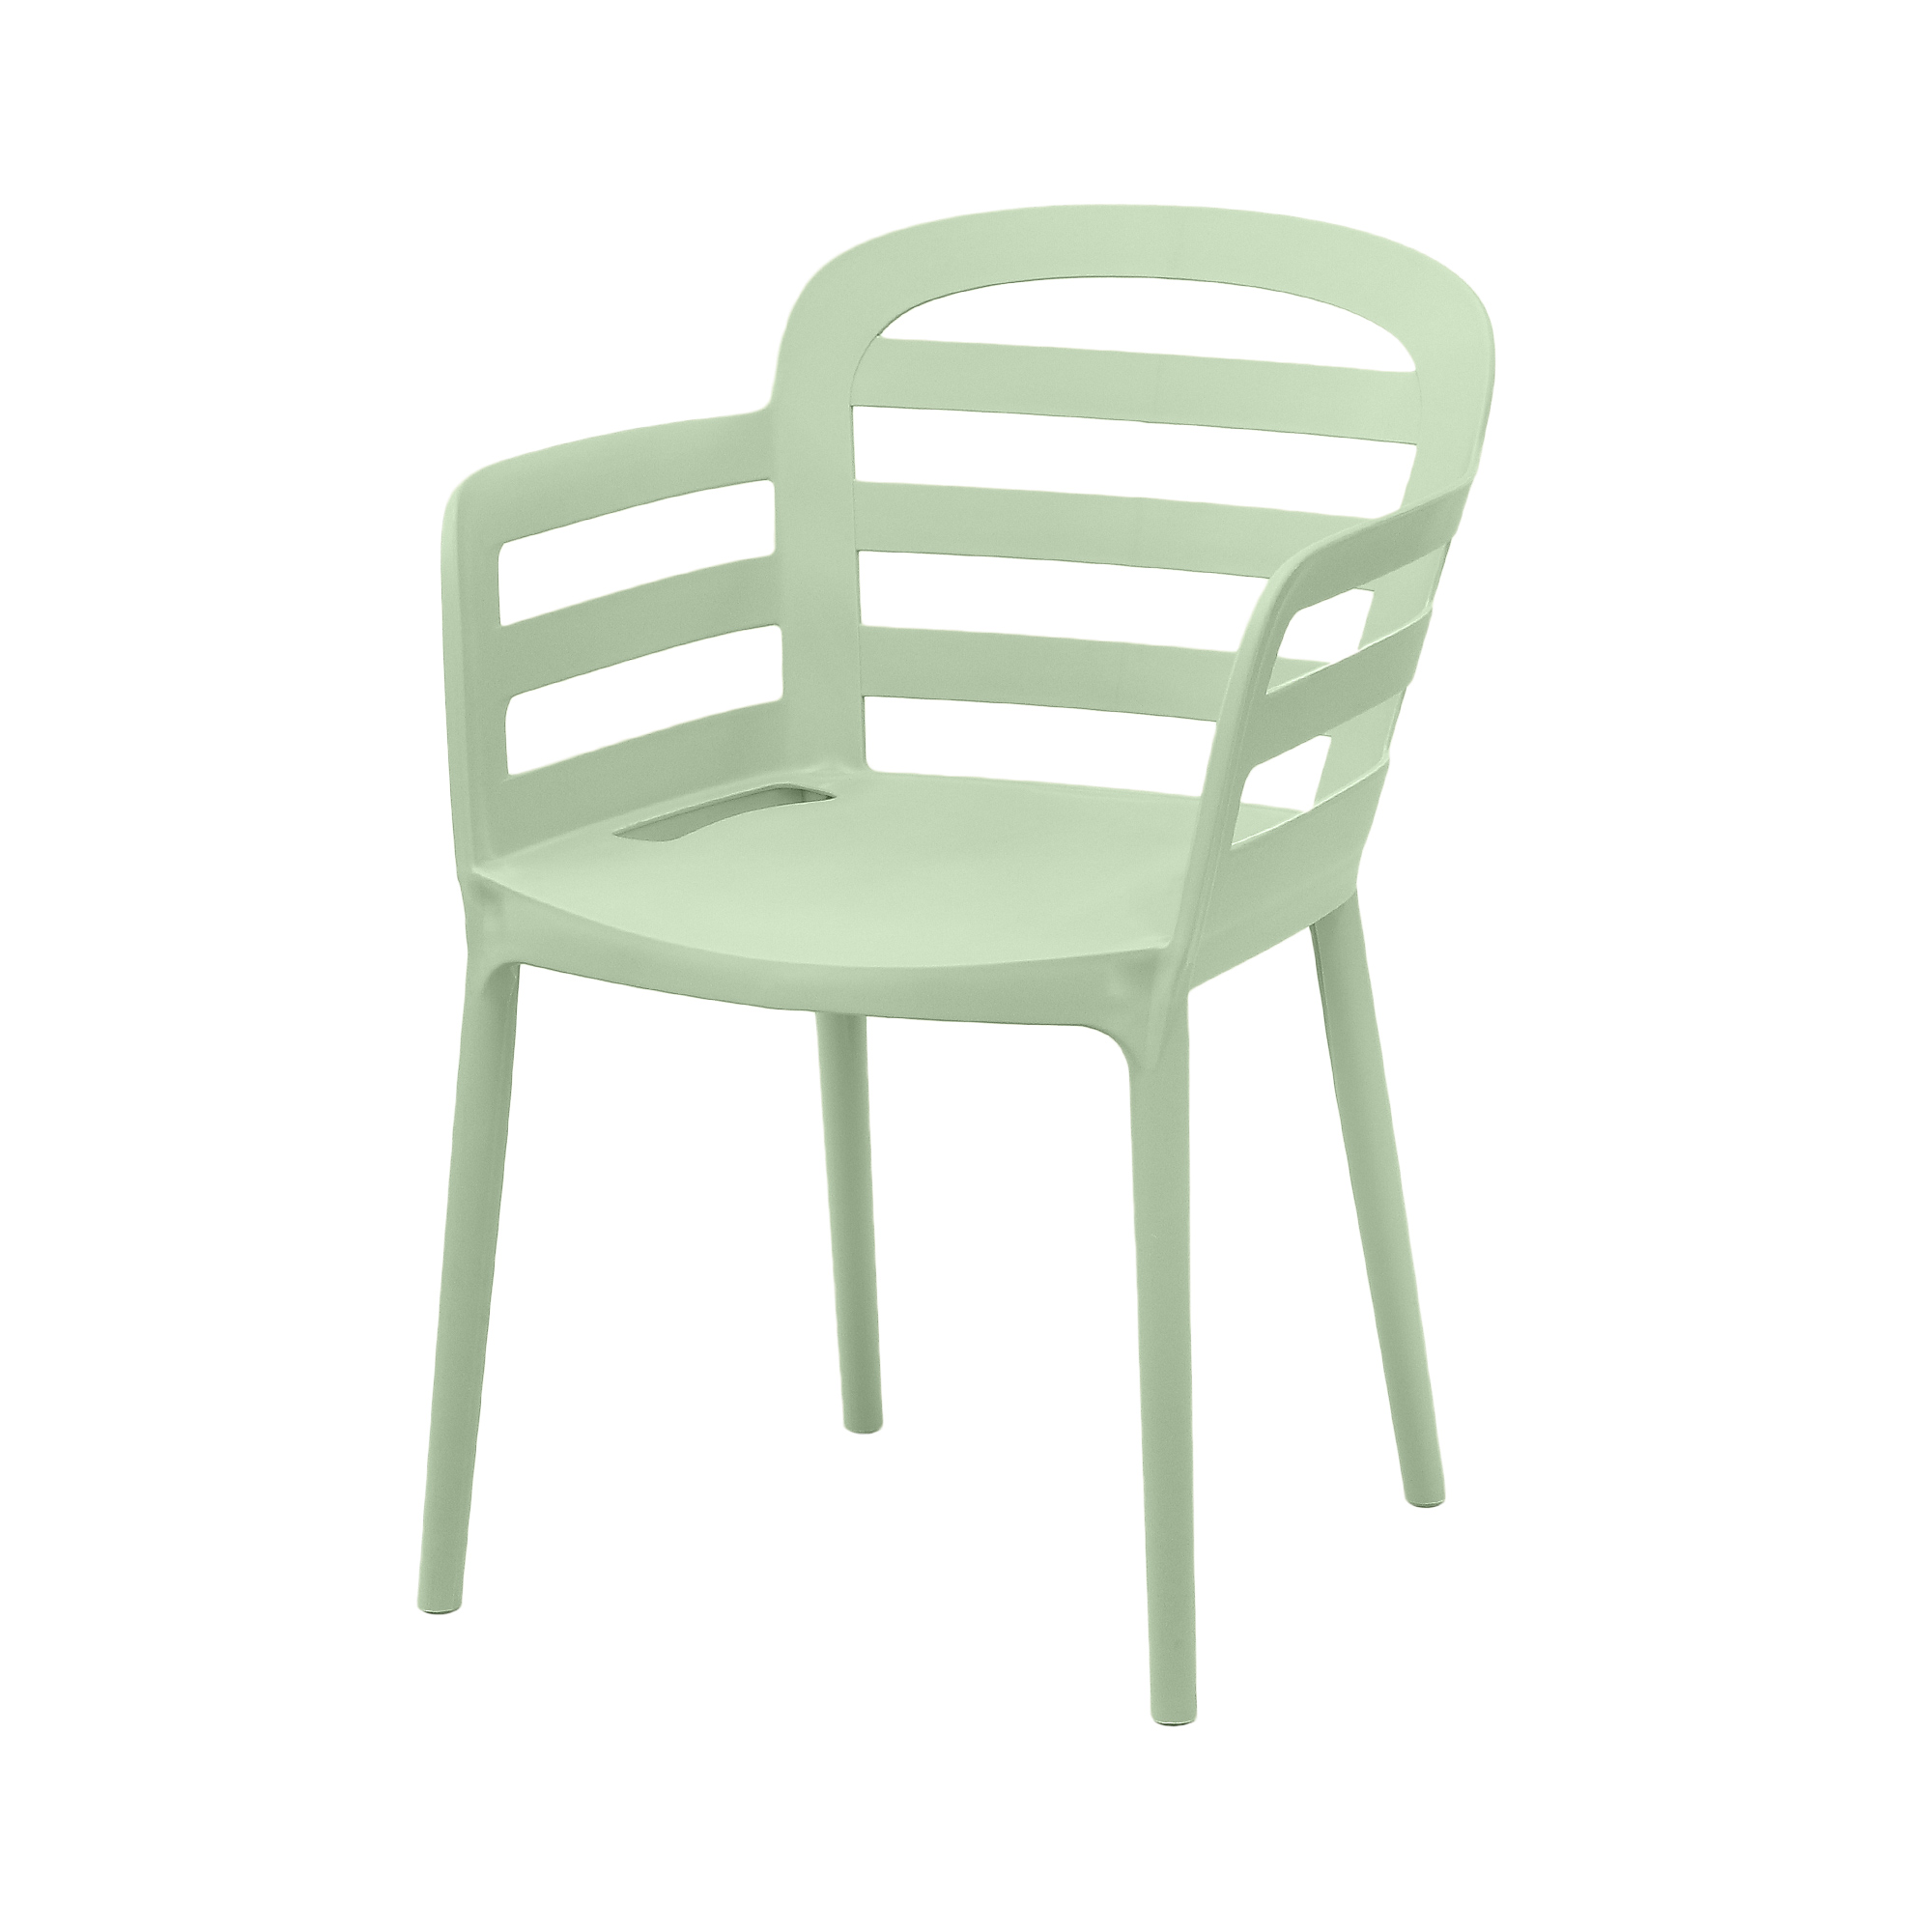 Стул Kaemingk furniture Boston 56.5x59x81cm зеленый